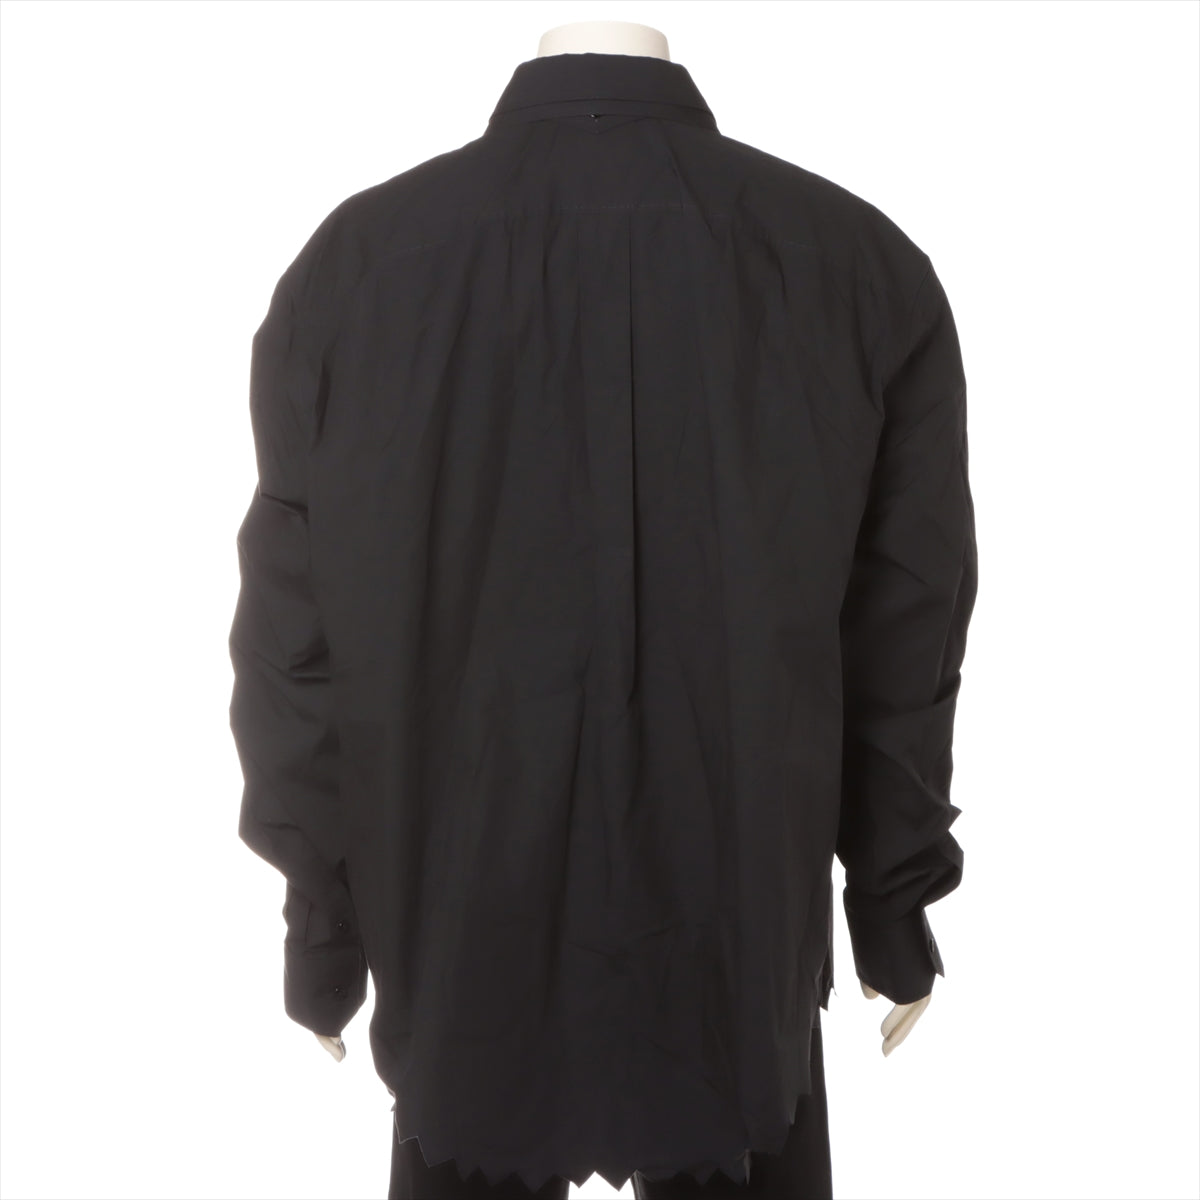 Louis Vuitton 23SS Cotton Shirt 4L Men's Black  RM231 iconic Kolor Shirt